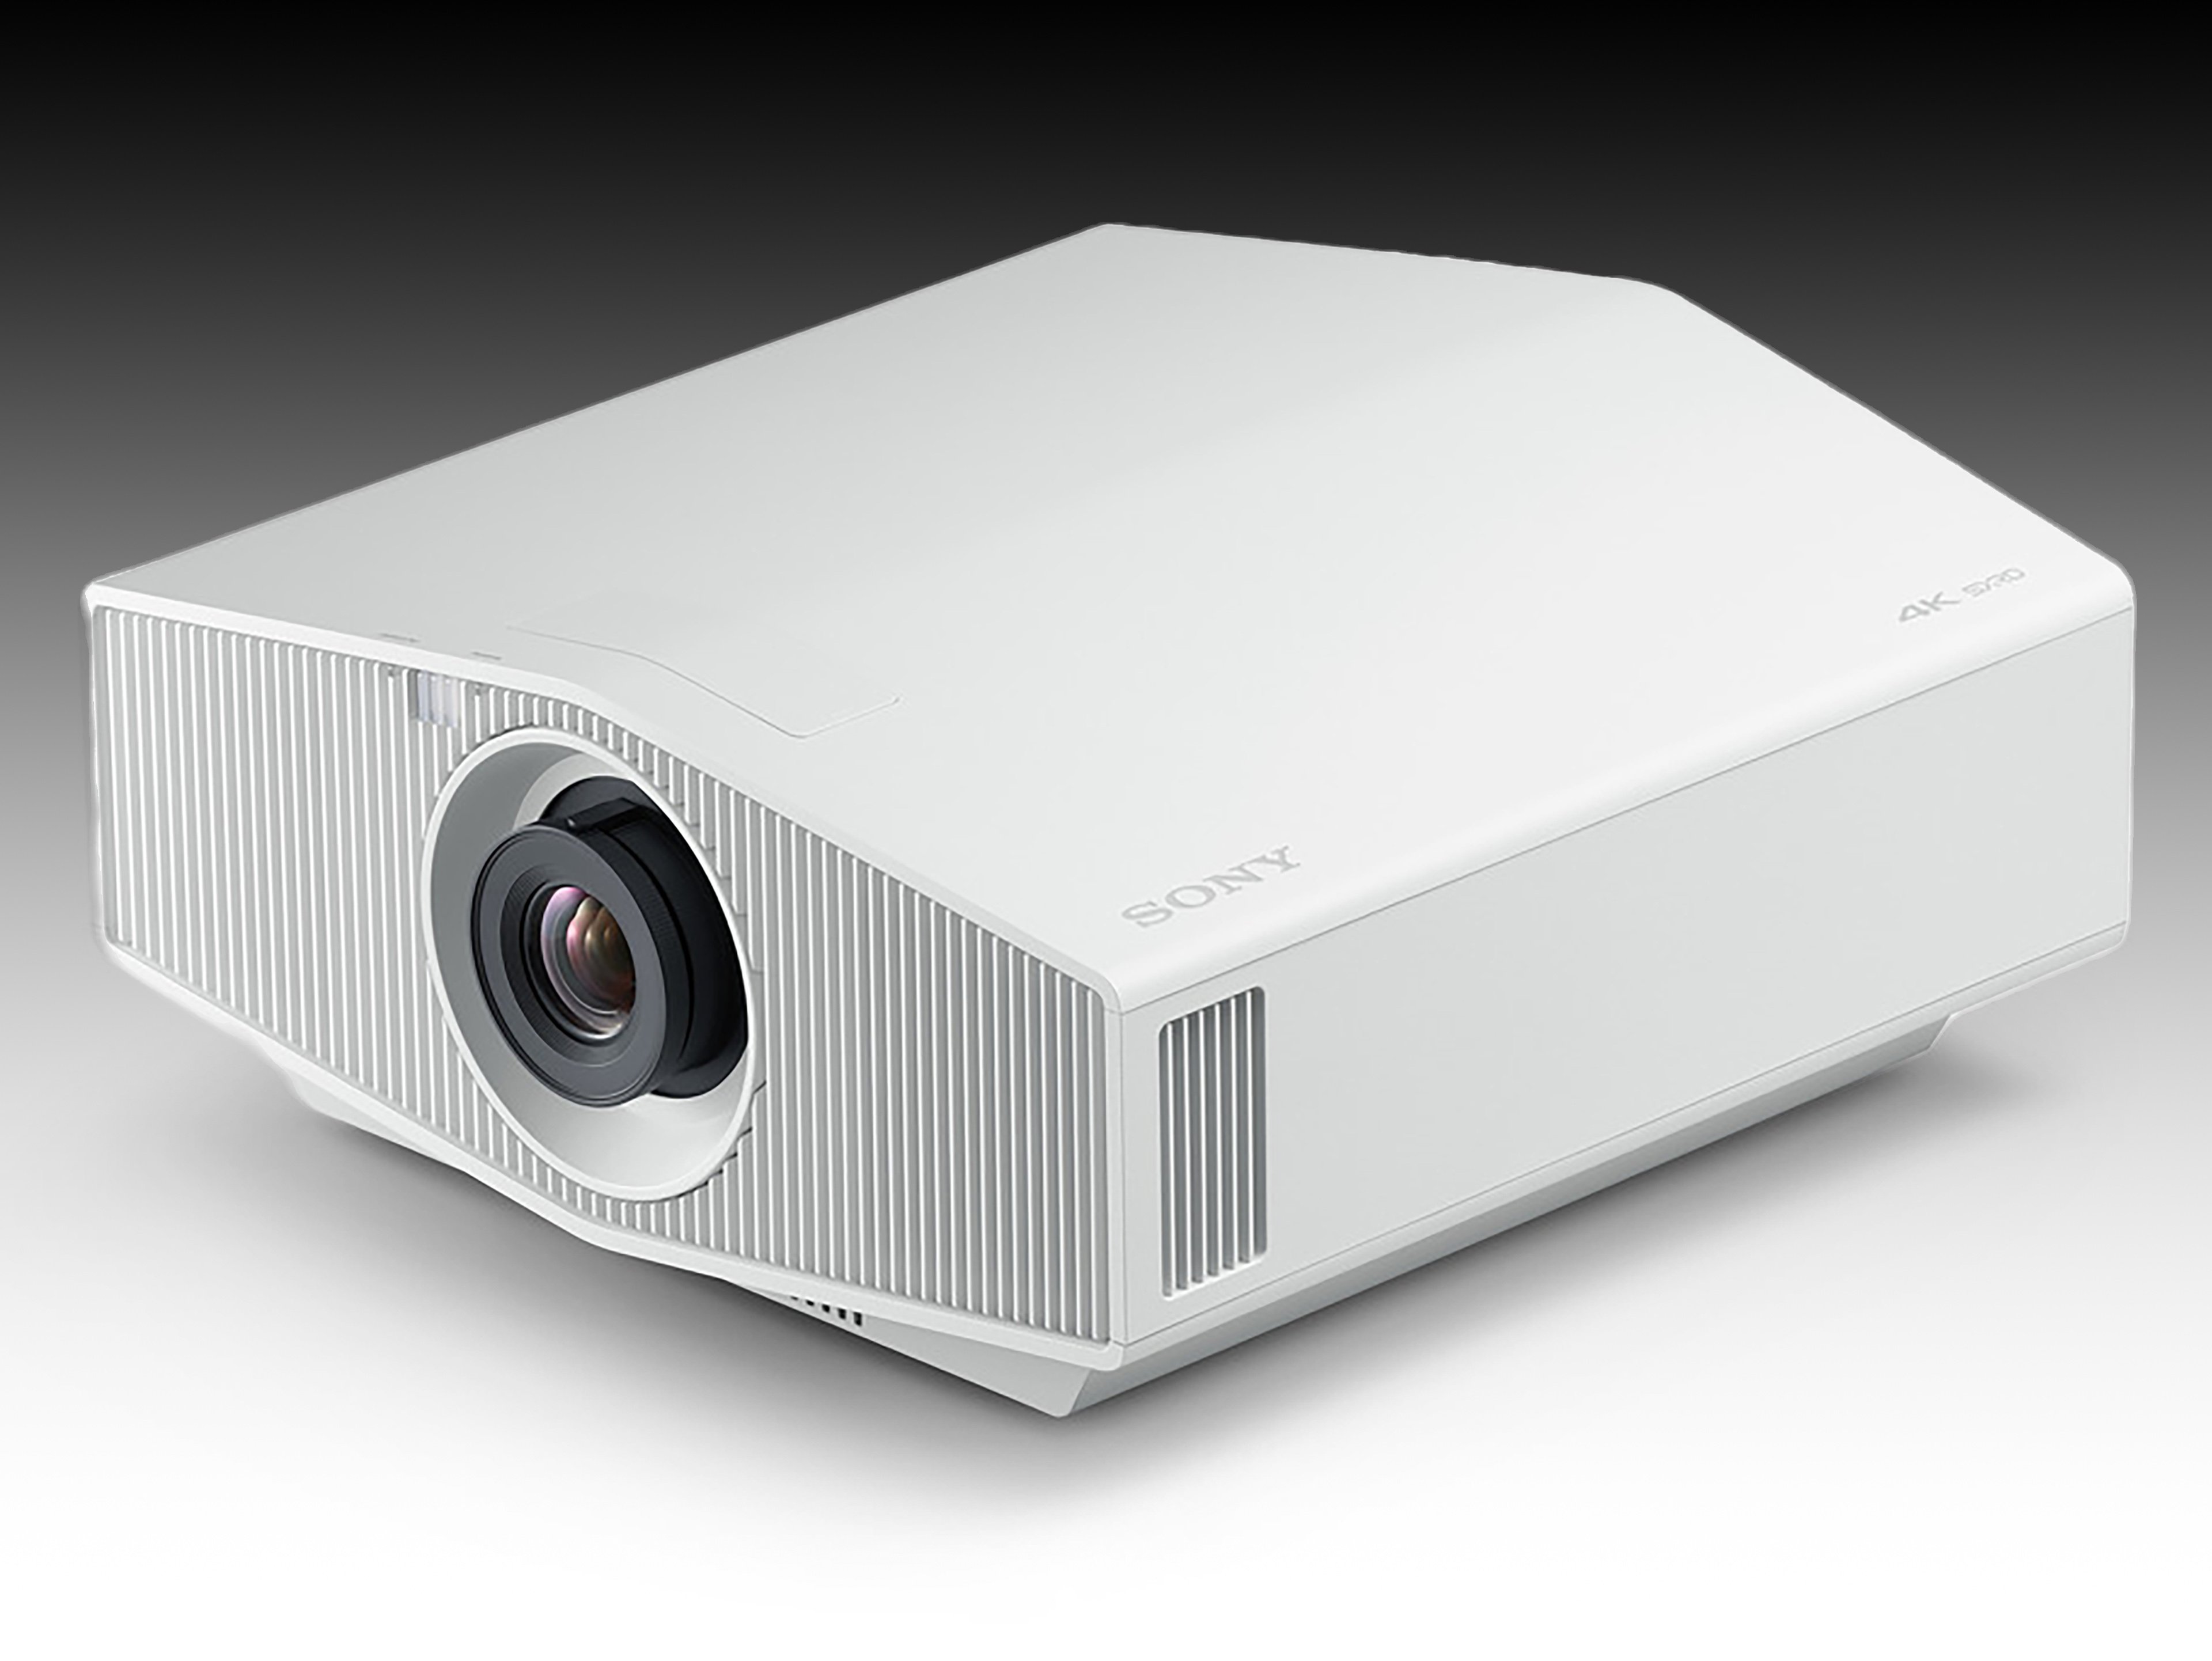 triángulo igualdad Contribuir Sony VPL-XW5000ES 4k projector review | Cameralabs